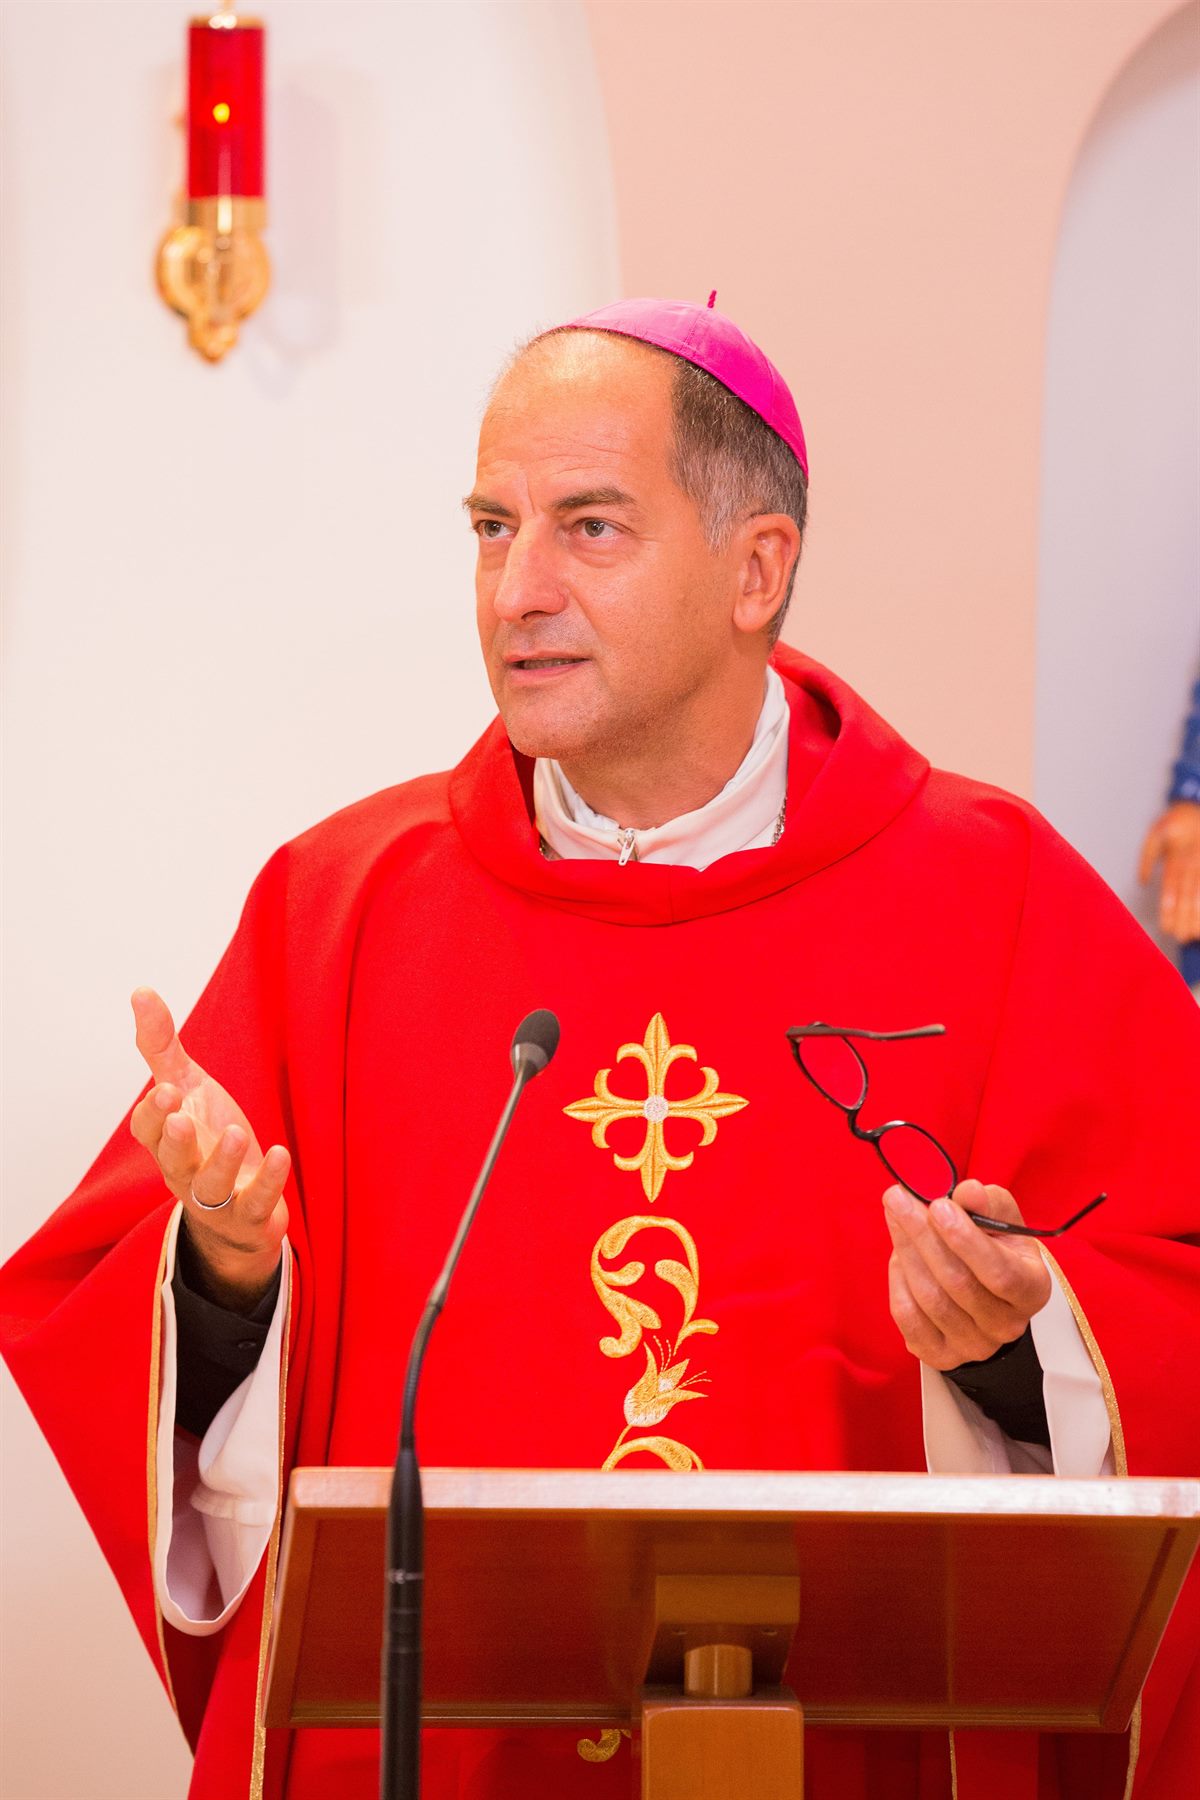 Kurienerzbischof Giampiero Dal Toso, Präsident der Päpstlichen Missionswerke